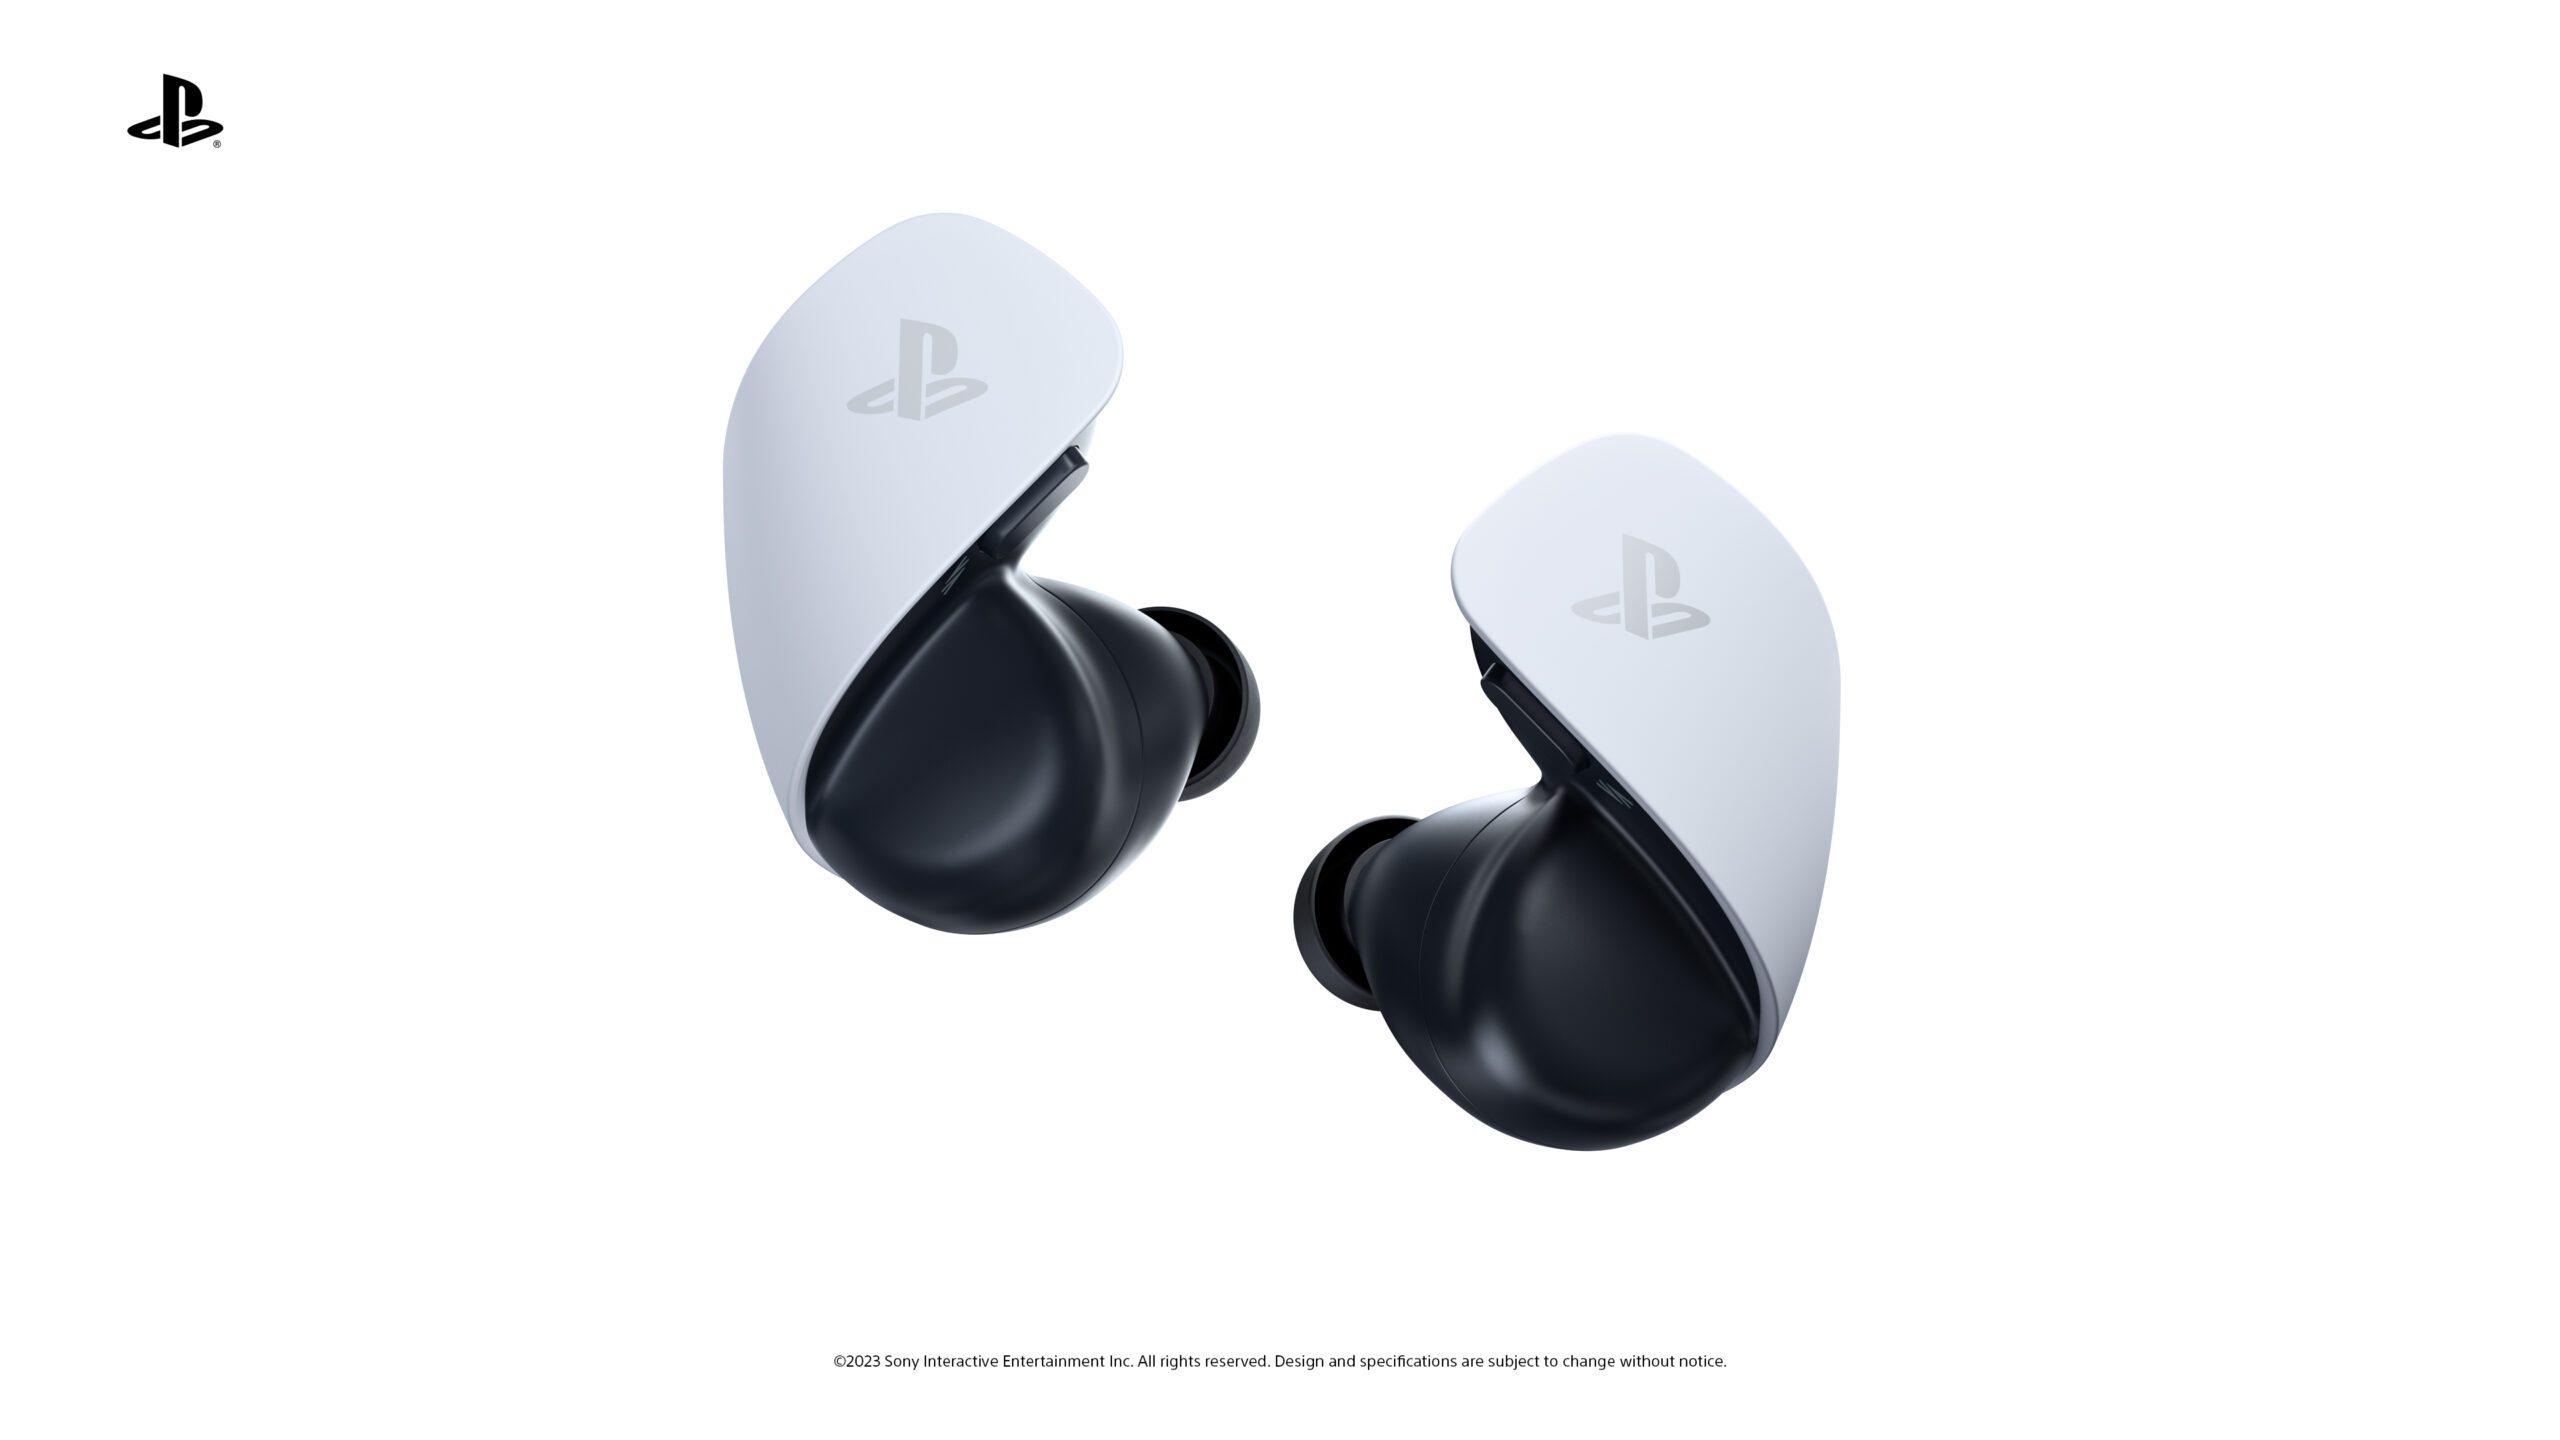 Probando PlayStation Portal, los auriculares Pulse Explore y el headset  inalámbrico Pulse Elite – PlayStation.Blog en español